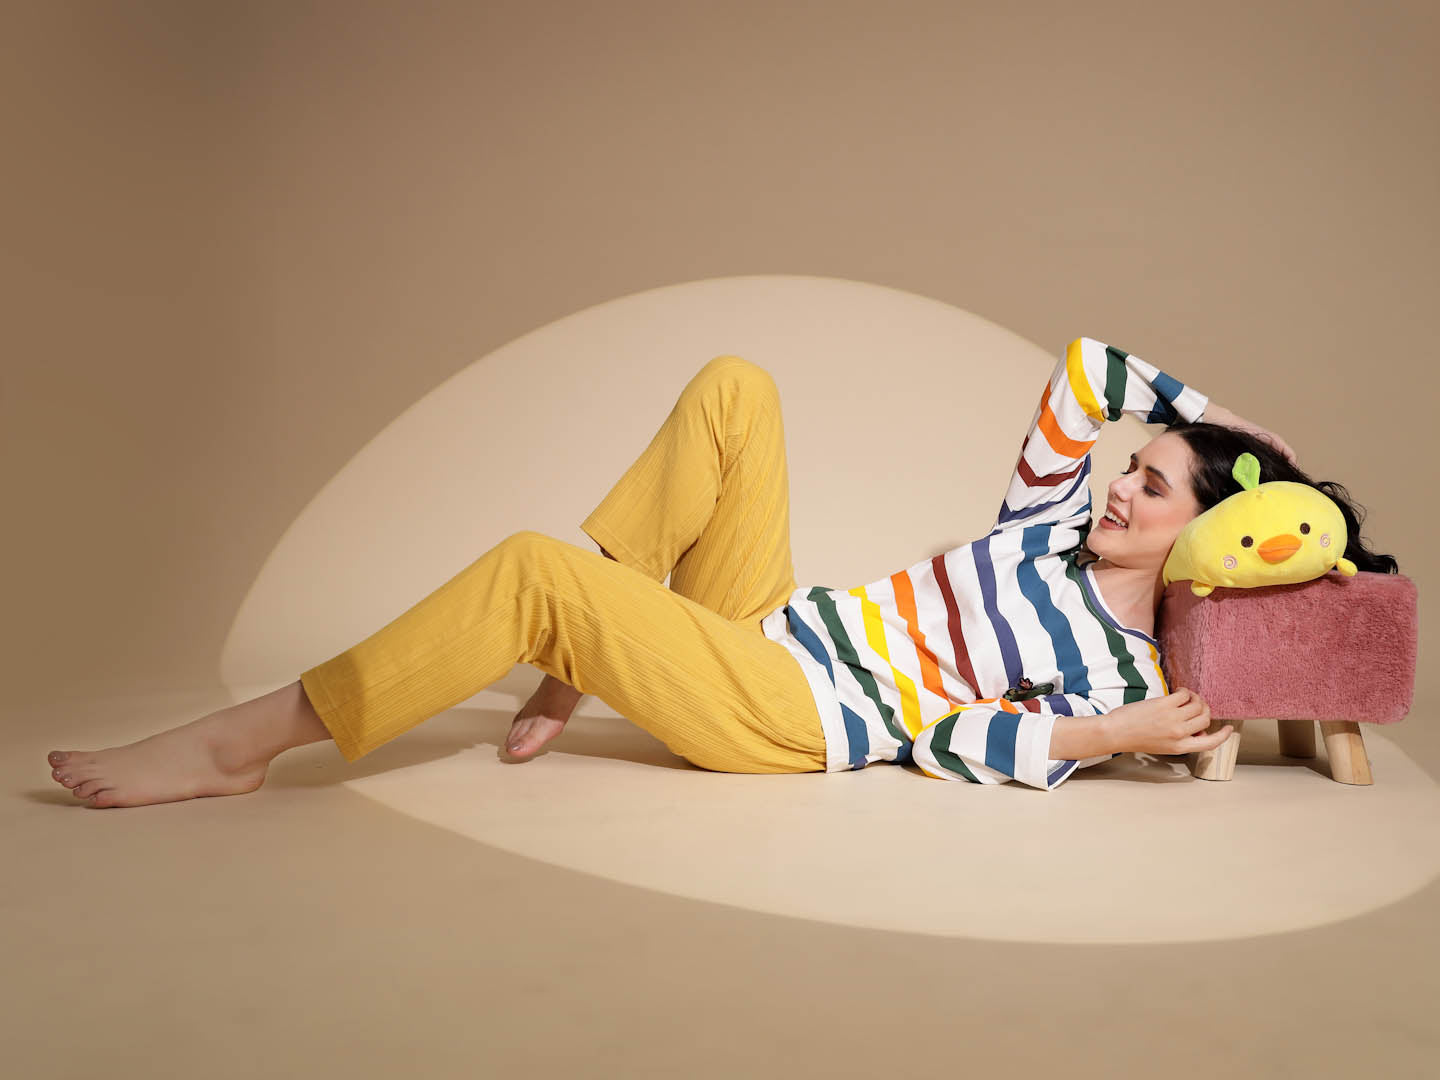 Multicolor Hosiery Full Sleeve  Striped Top & Pyjama Night Suit Set